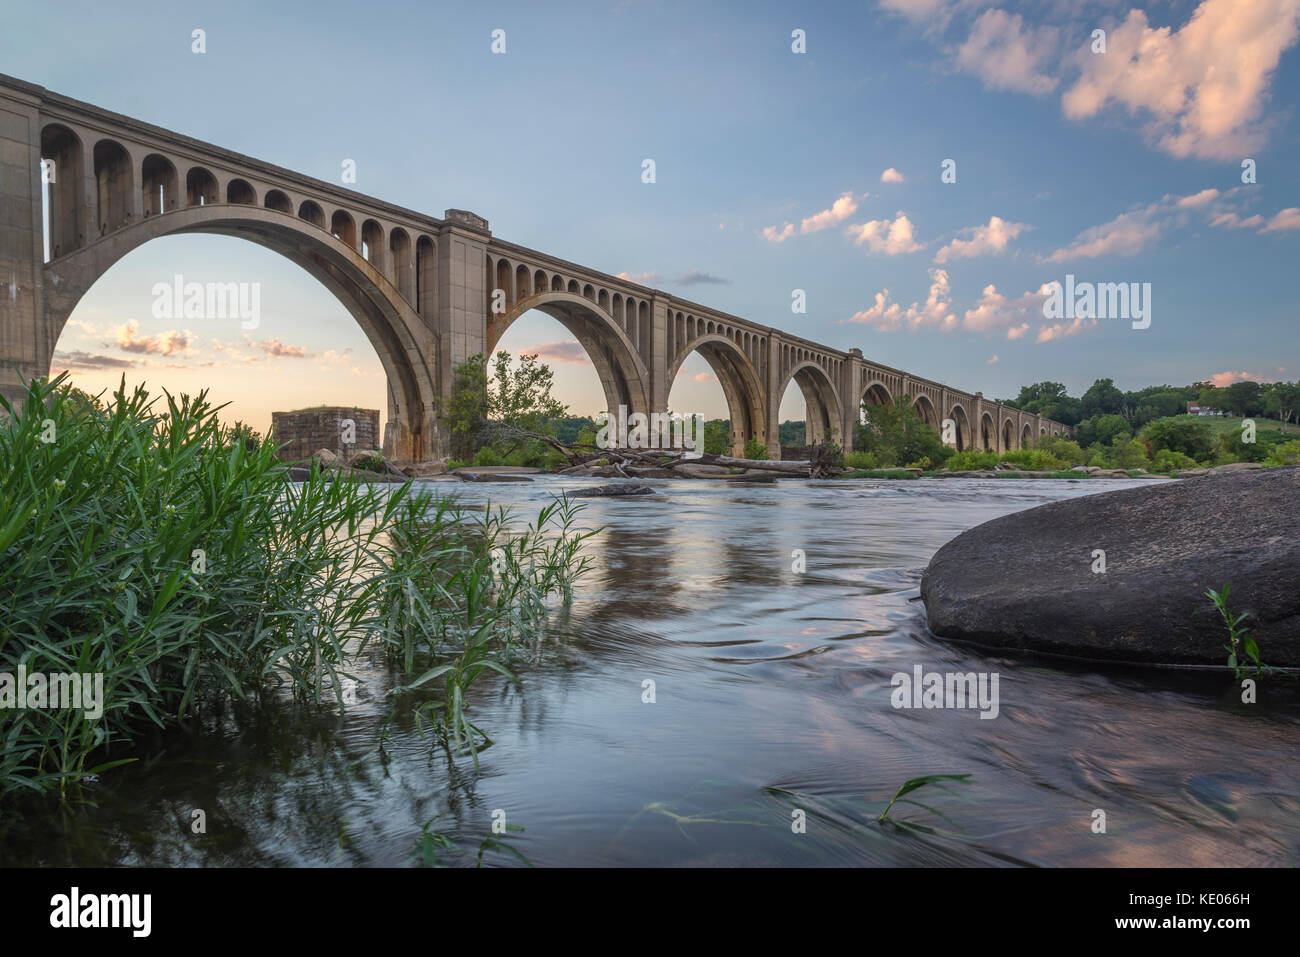 Un pont de chemin de fer gracieux et voûté enjambe la James River près de Richmond, en Virginie, aux États-Unis. Banque D'Images